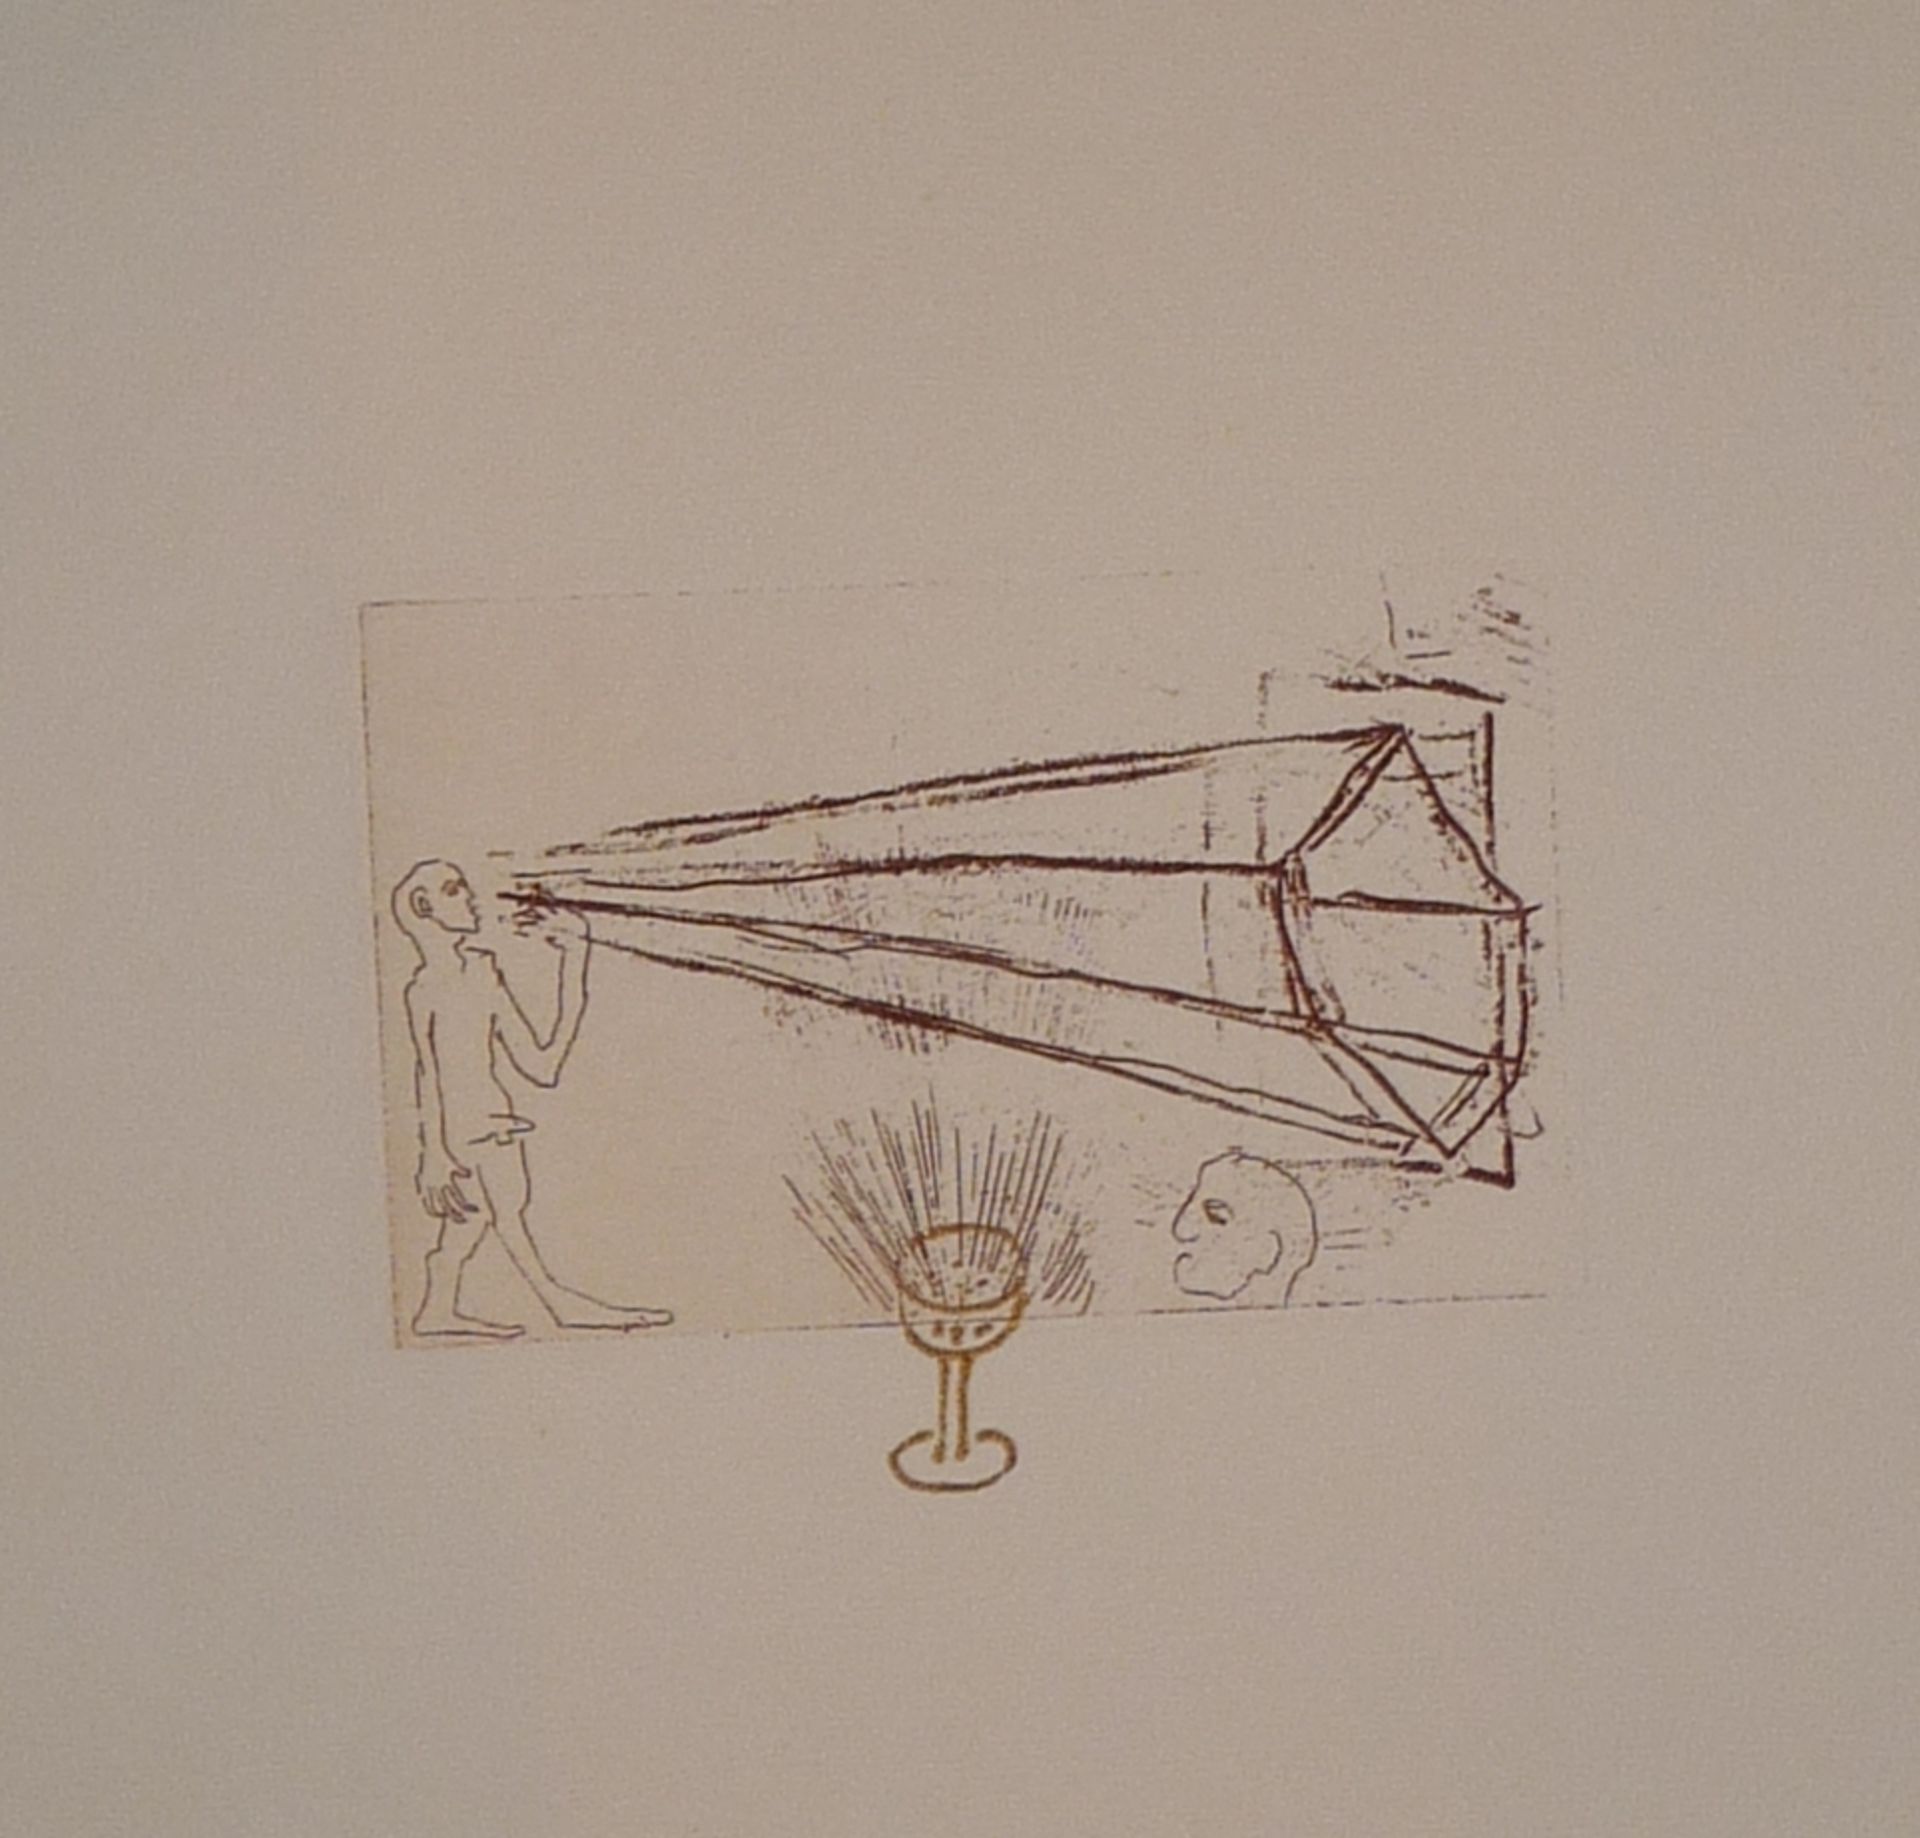 Sowa, HubertDrei Blatt Graphik(Bamberg 1954 geb.) Stilisierte Figur, Linolschnitt, "E.A. 12", - Bild 2 aus 2